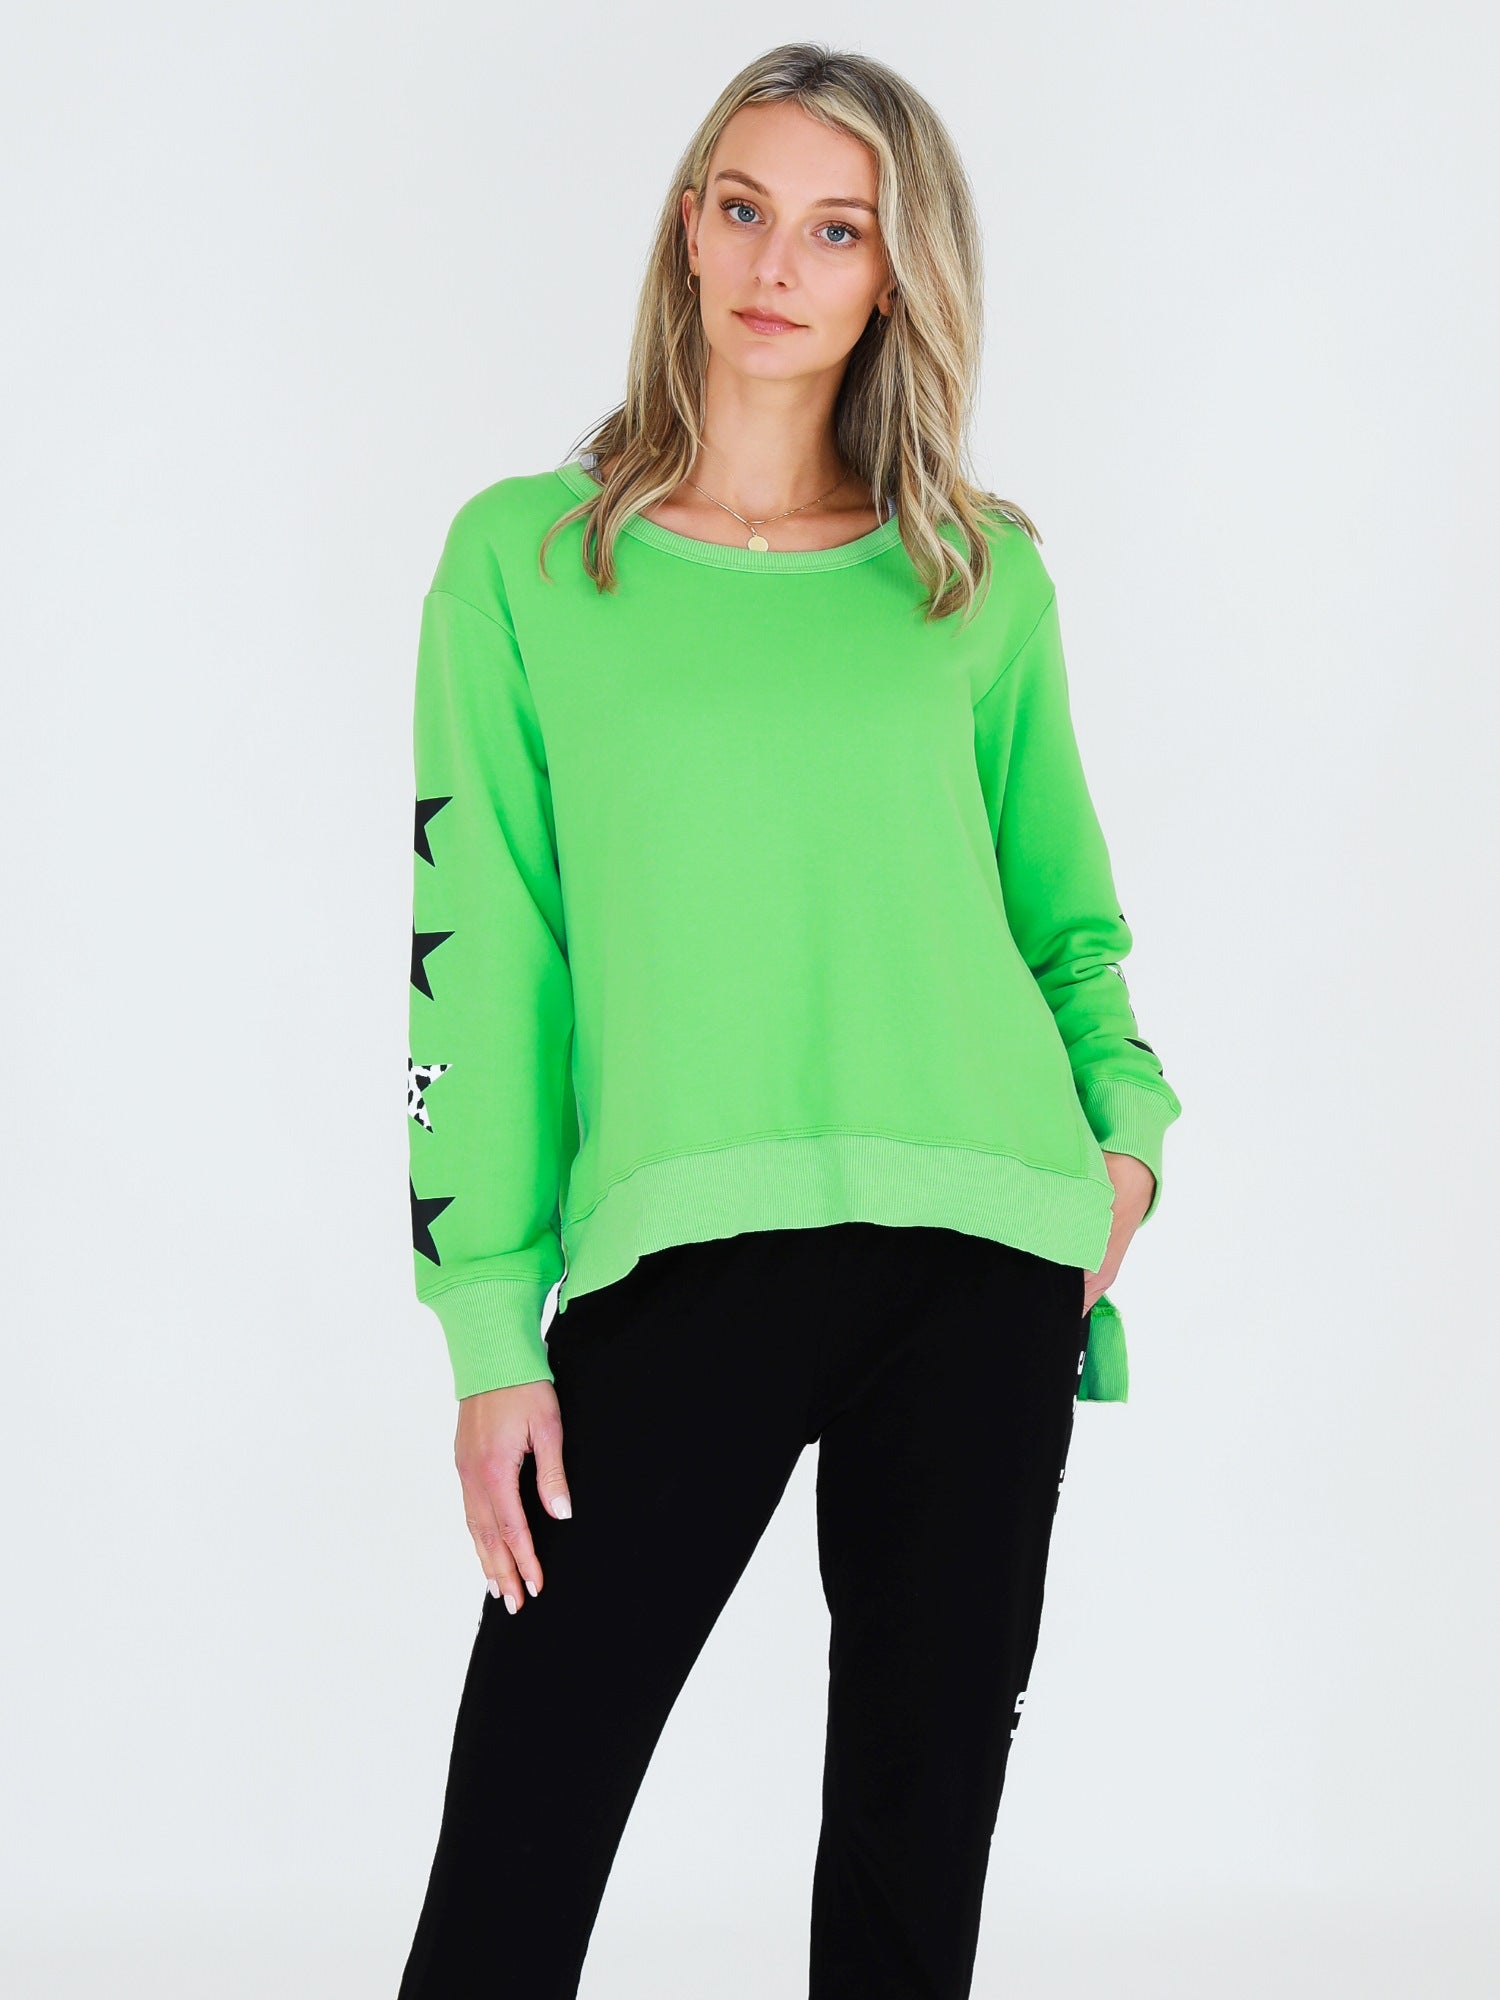  womens green sweatshirts #color_cool matcha